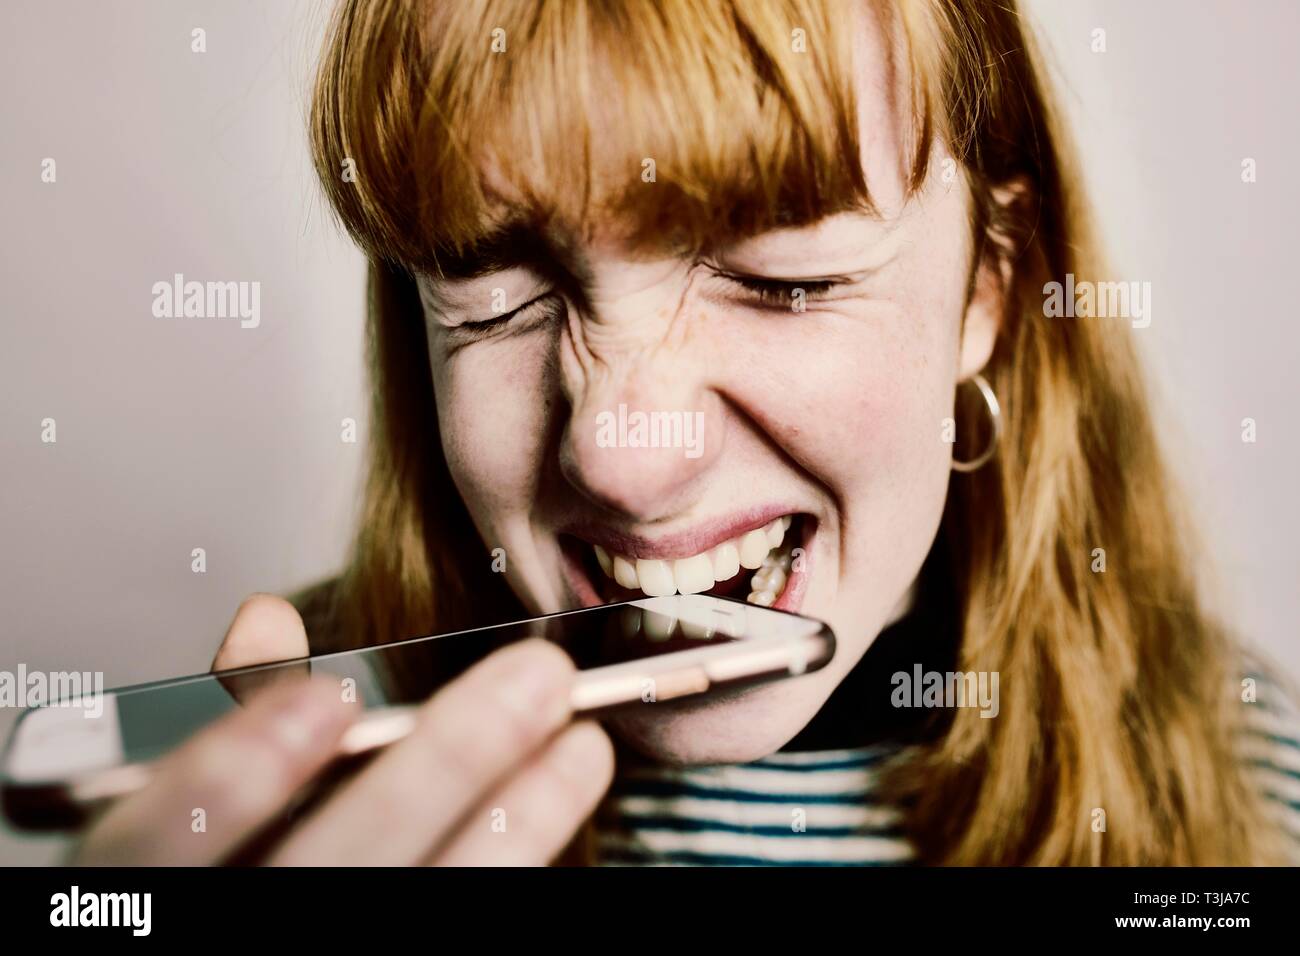 Adolescent, fille, rousse, mordre dans son smartphone en désespoir de cause, studio shot, Allemagne Banque D'Images